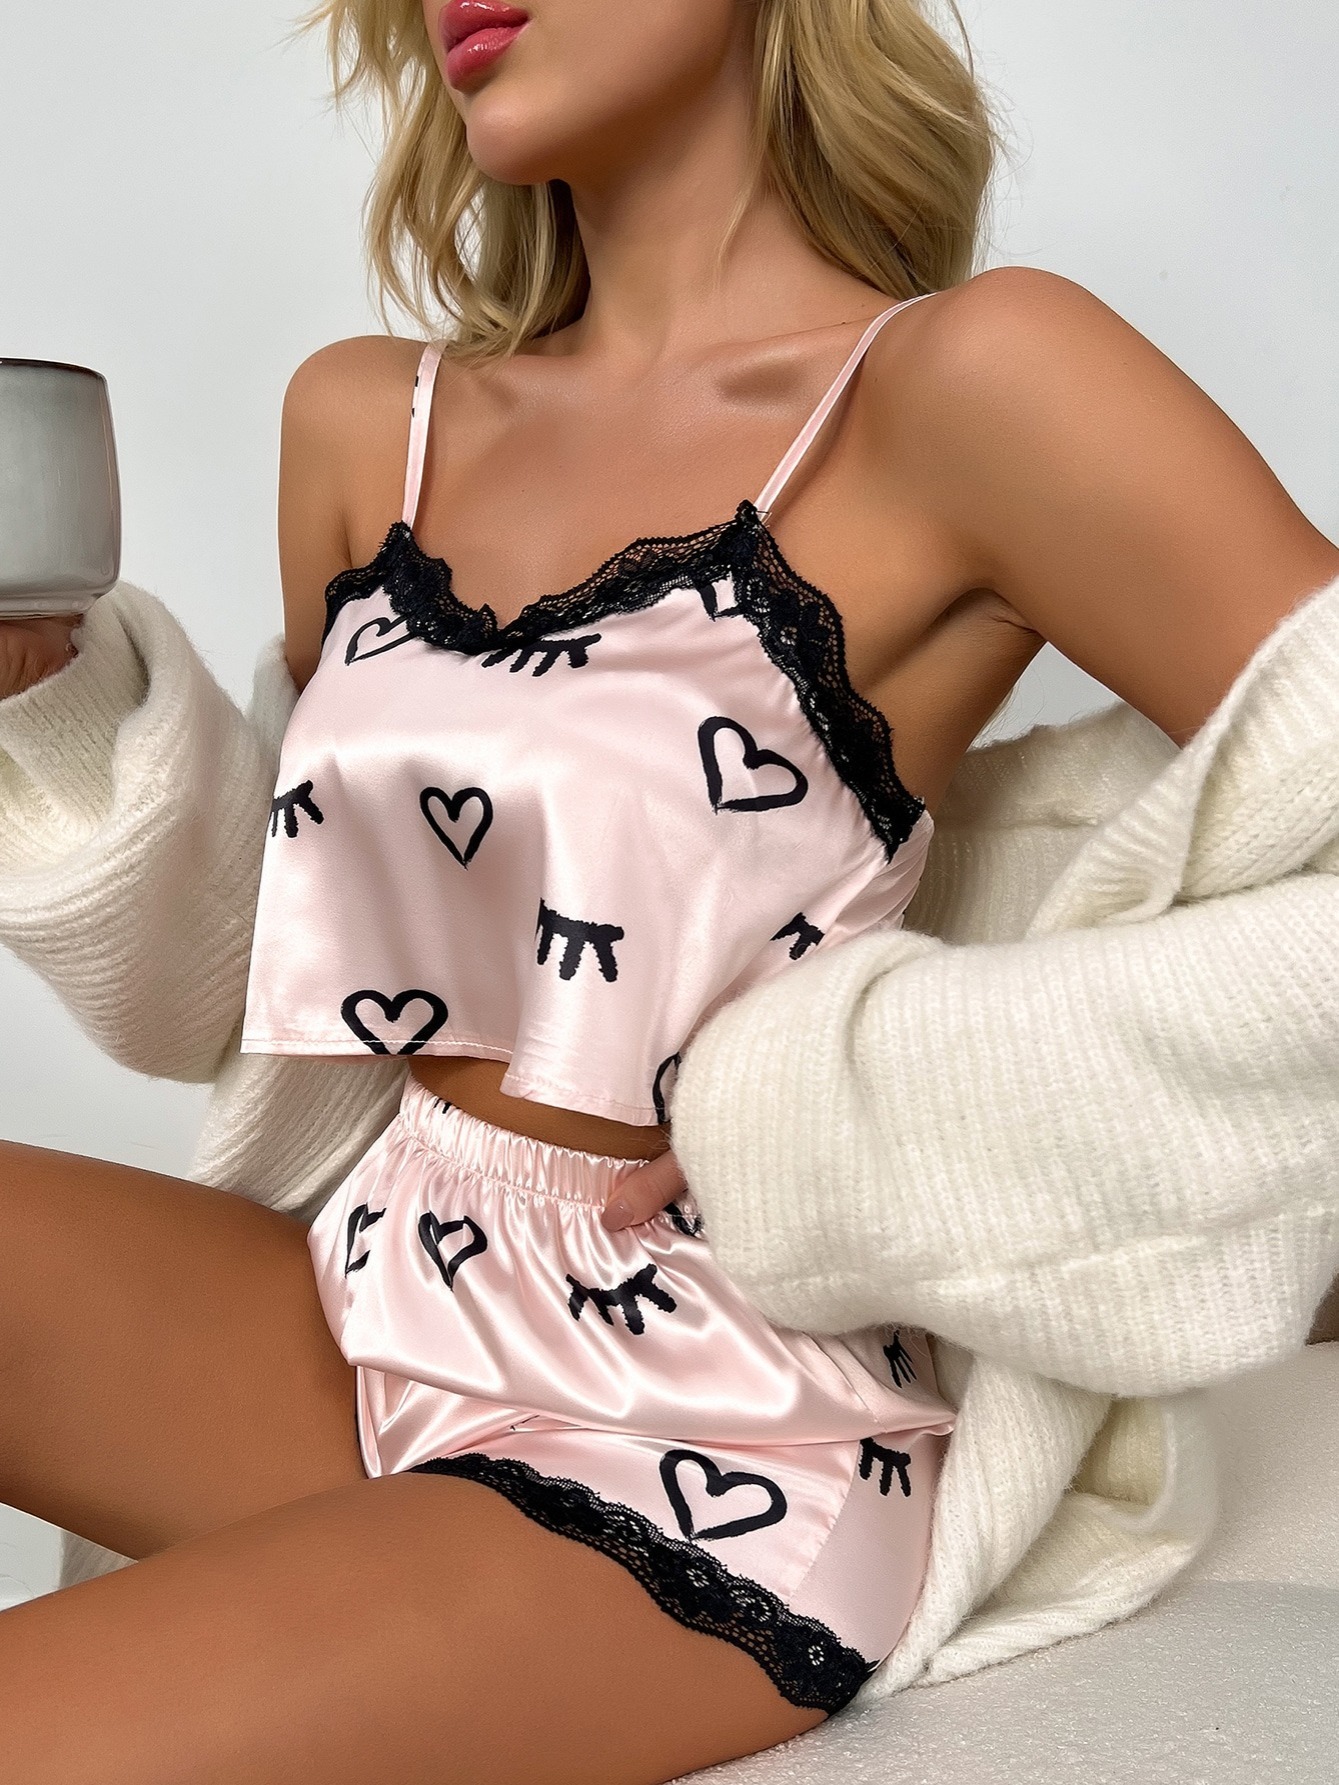 Sexy Sleepwear & Pajamas for Women